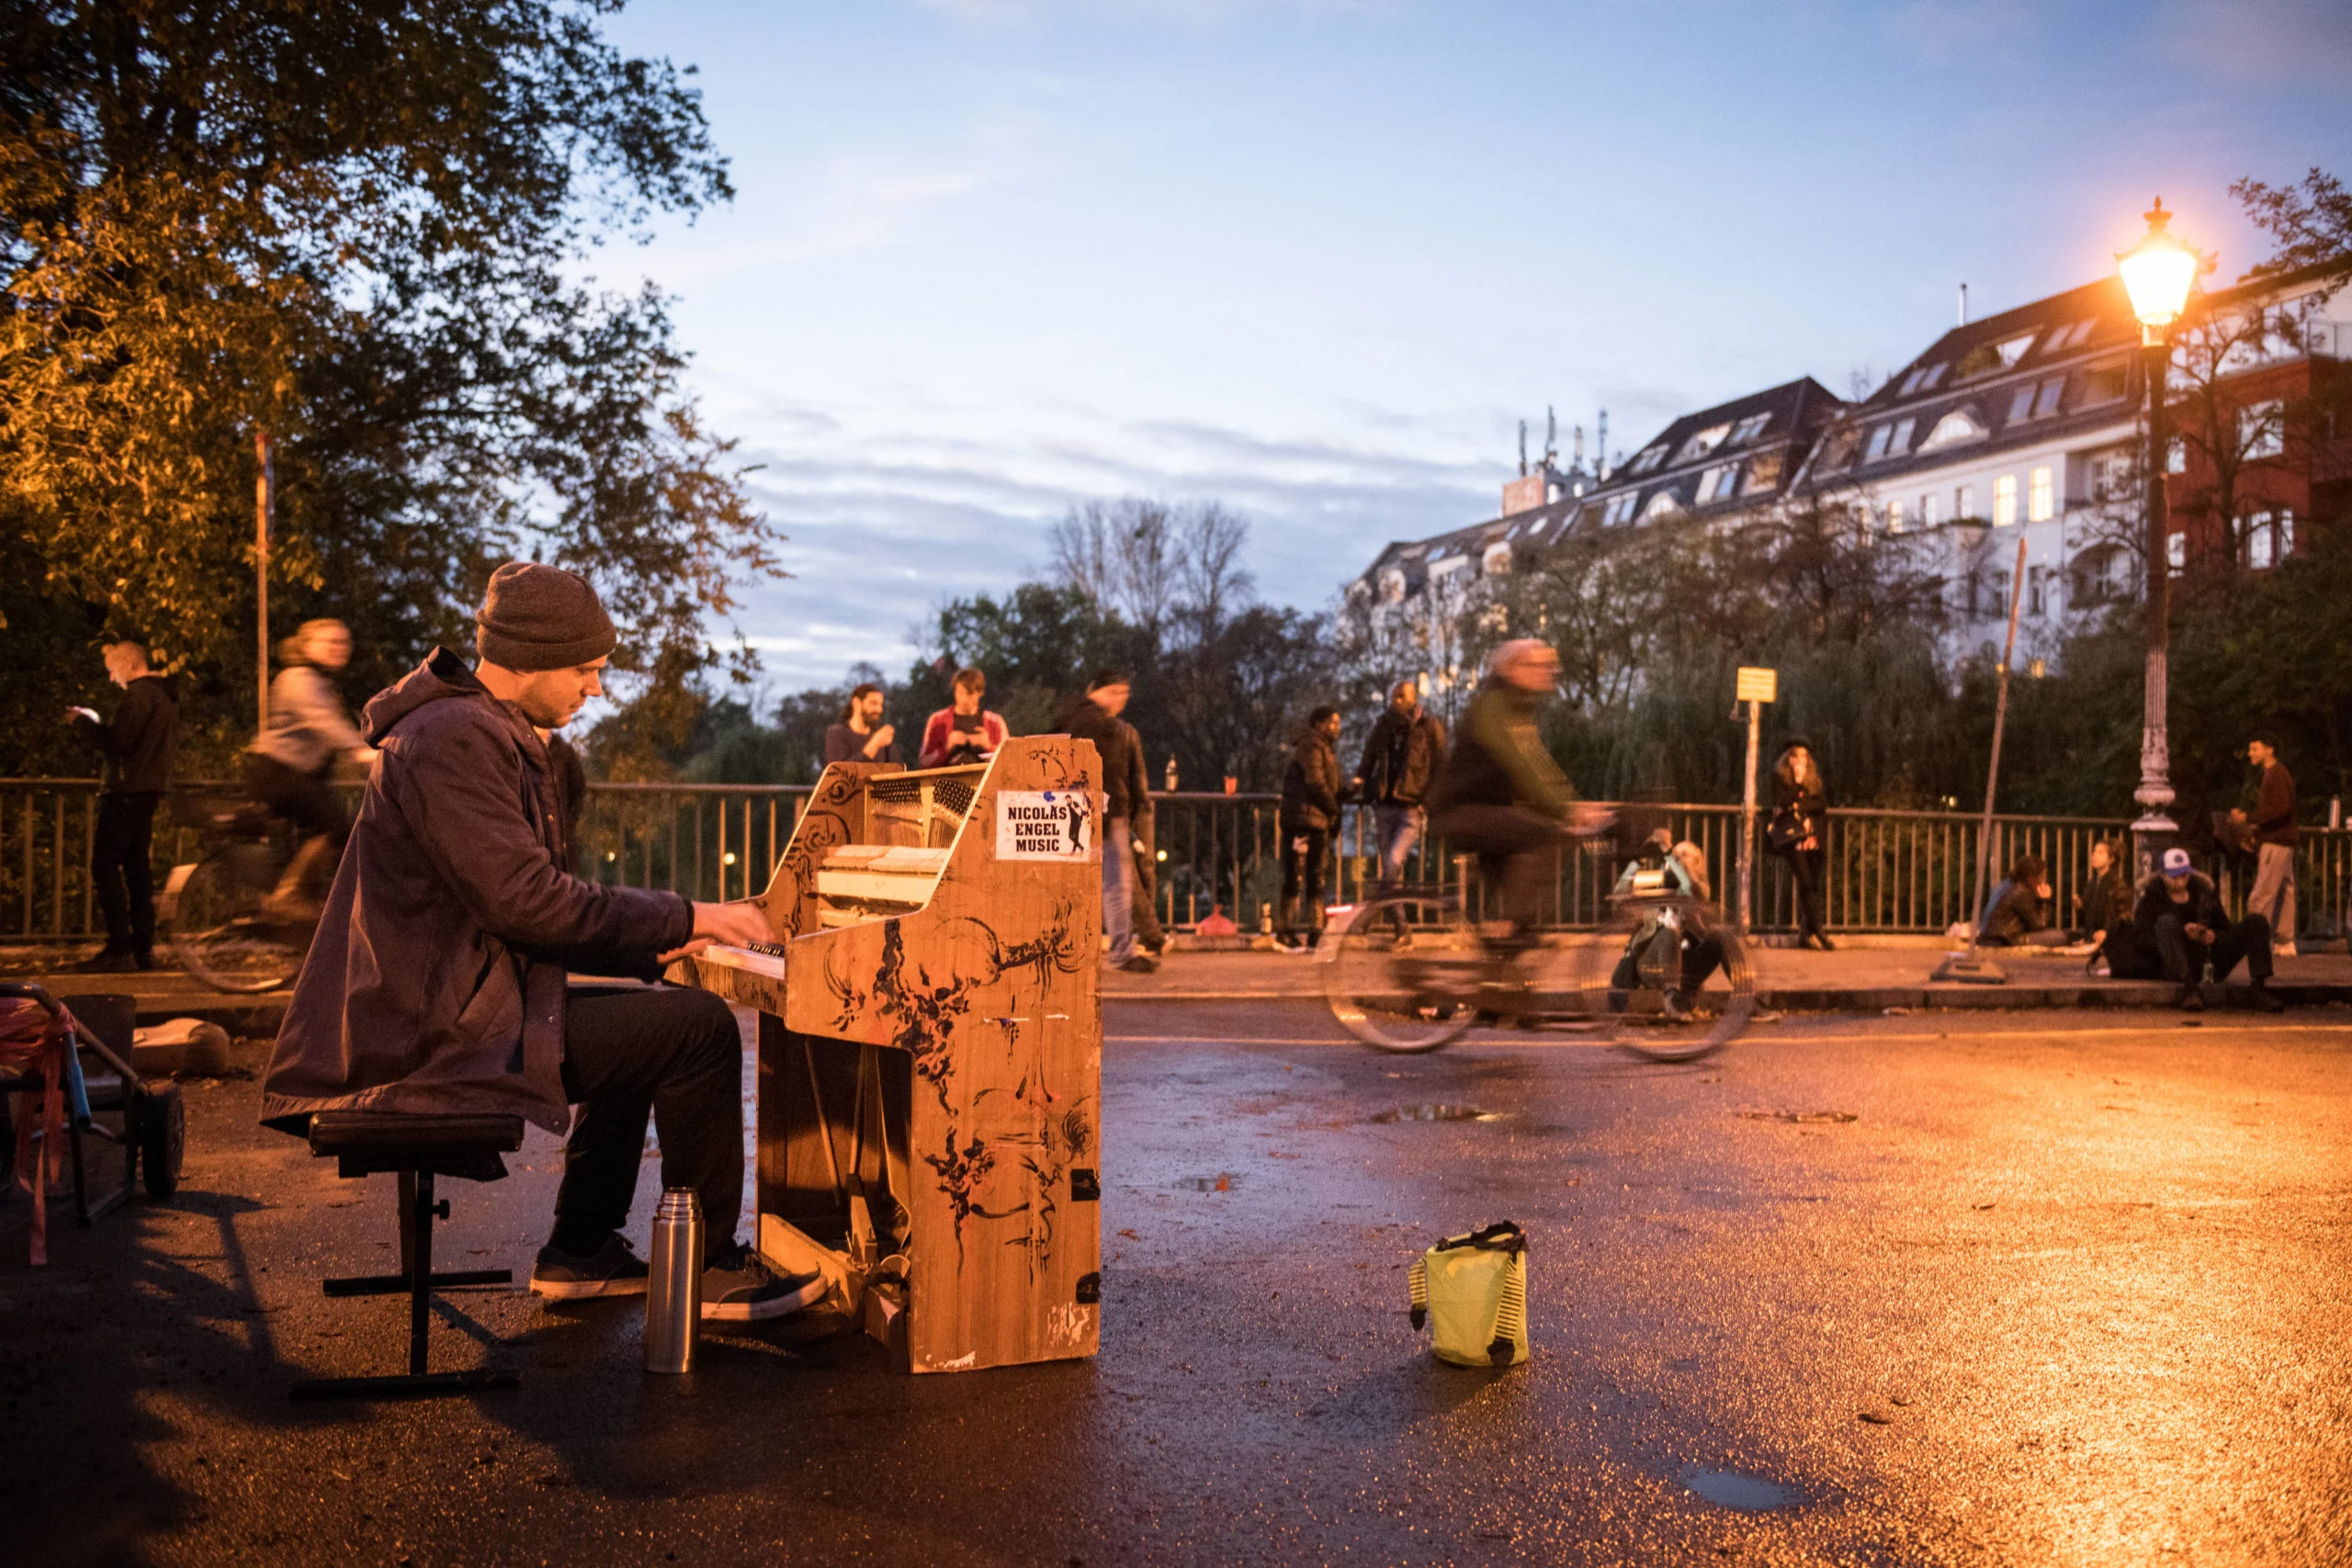 Sobald es schön wird, holen die Berliner Straßenmusiker:innen ihre Instrumente heraus. Und wir lieben es, ihnen zuzuhören.